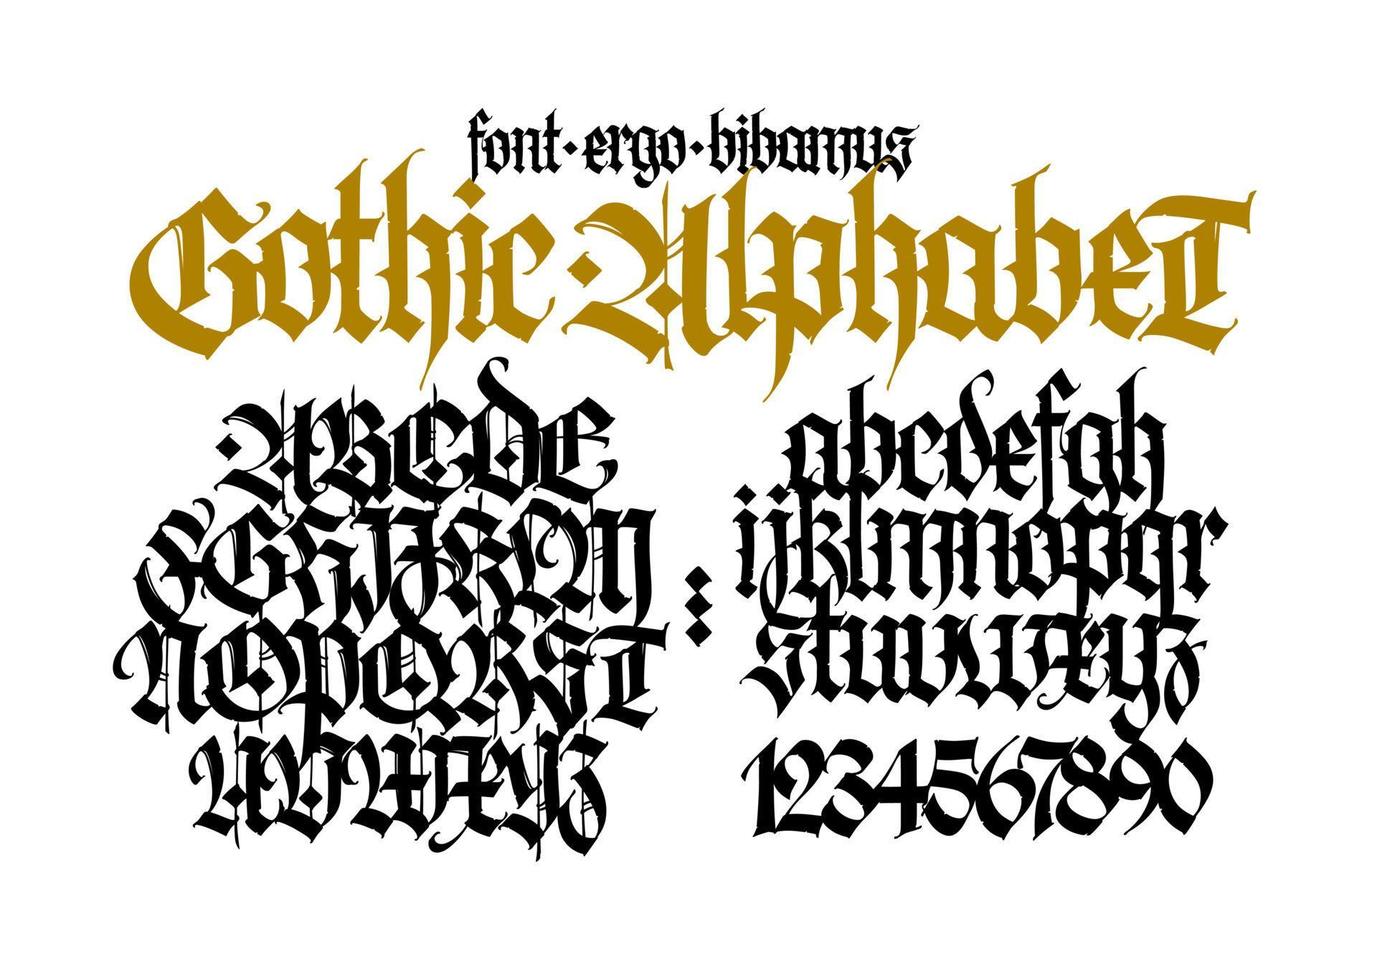 gotisch. Groß- und Kleinbuchstaben in schwarzen Buchstaben auf weißem Hintergrund. schöne und stilvolle kalligrafie. elegante schrift für tattoo. mittelalterlicher europäischer moderner stil. Die Buchstaben werden mit einem Stift geschrieben. vektor